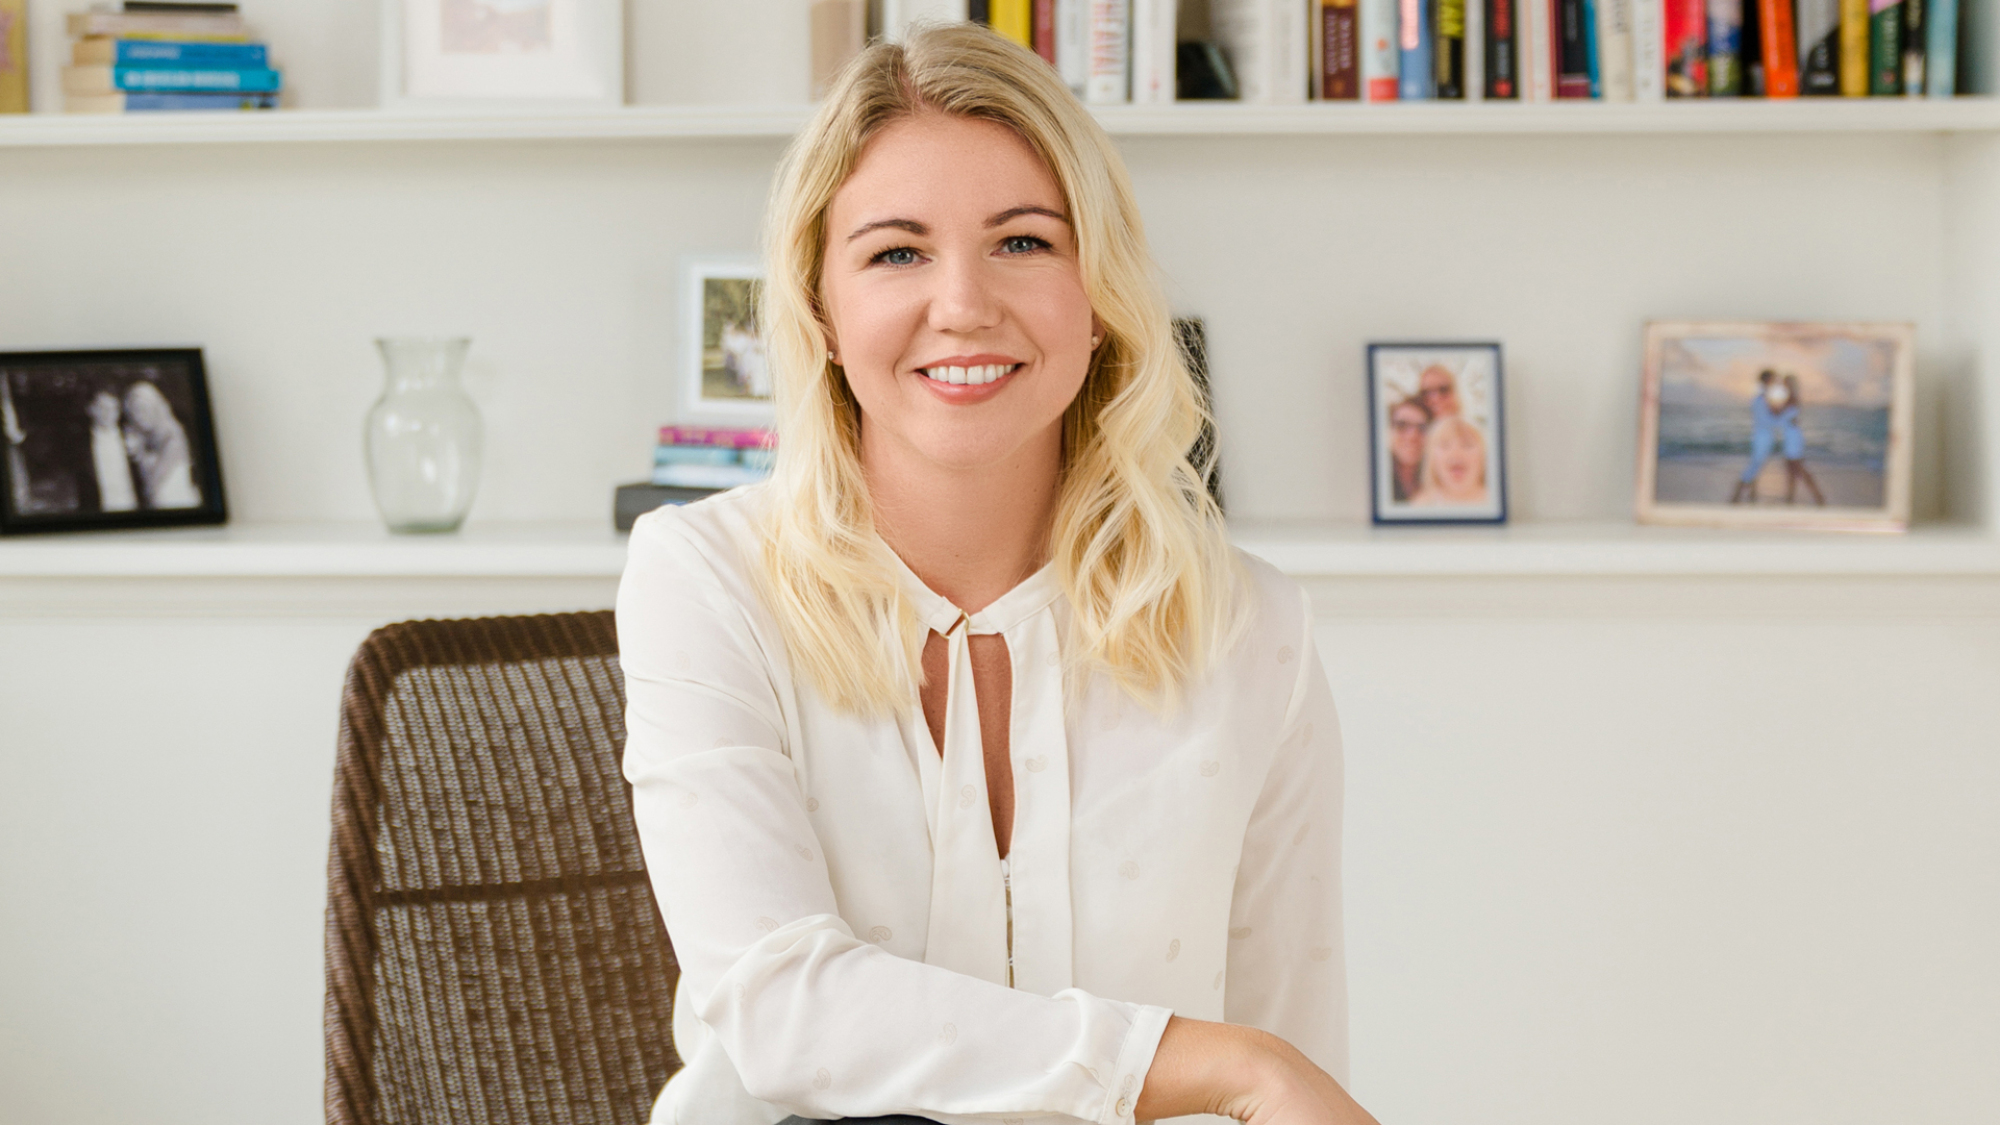 Elina Berglund, PDG et co-fondatrice de Natural Cycles, sourit pour une photo dans un bureau lumineux.